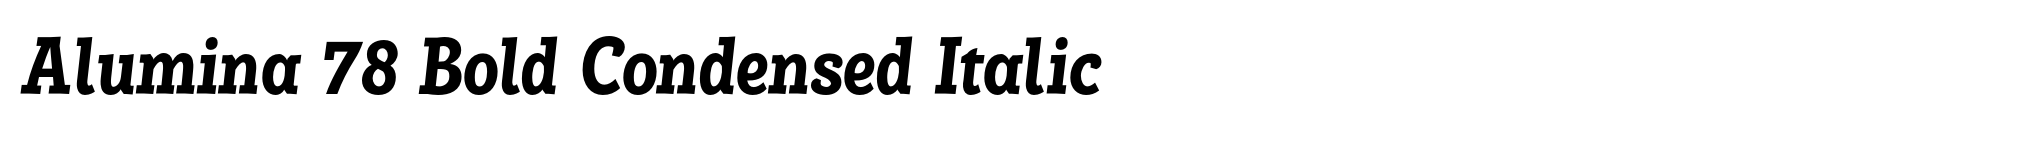 Alumina 78 Bold Condensed Italic image